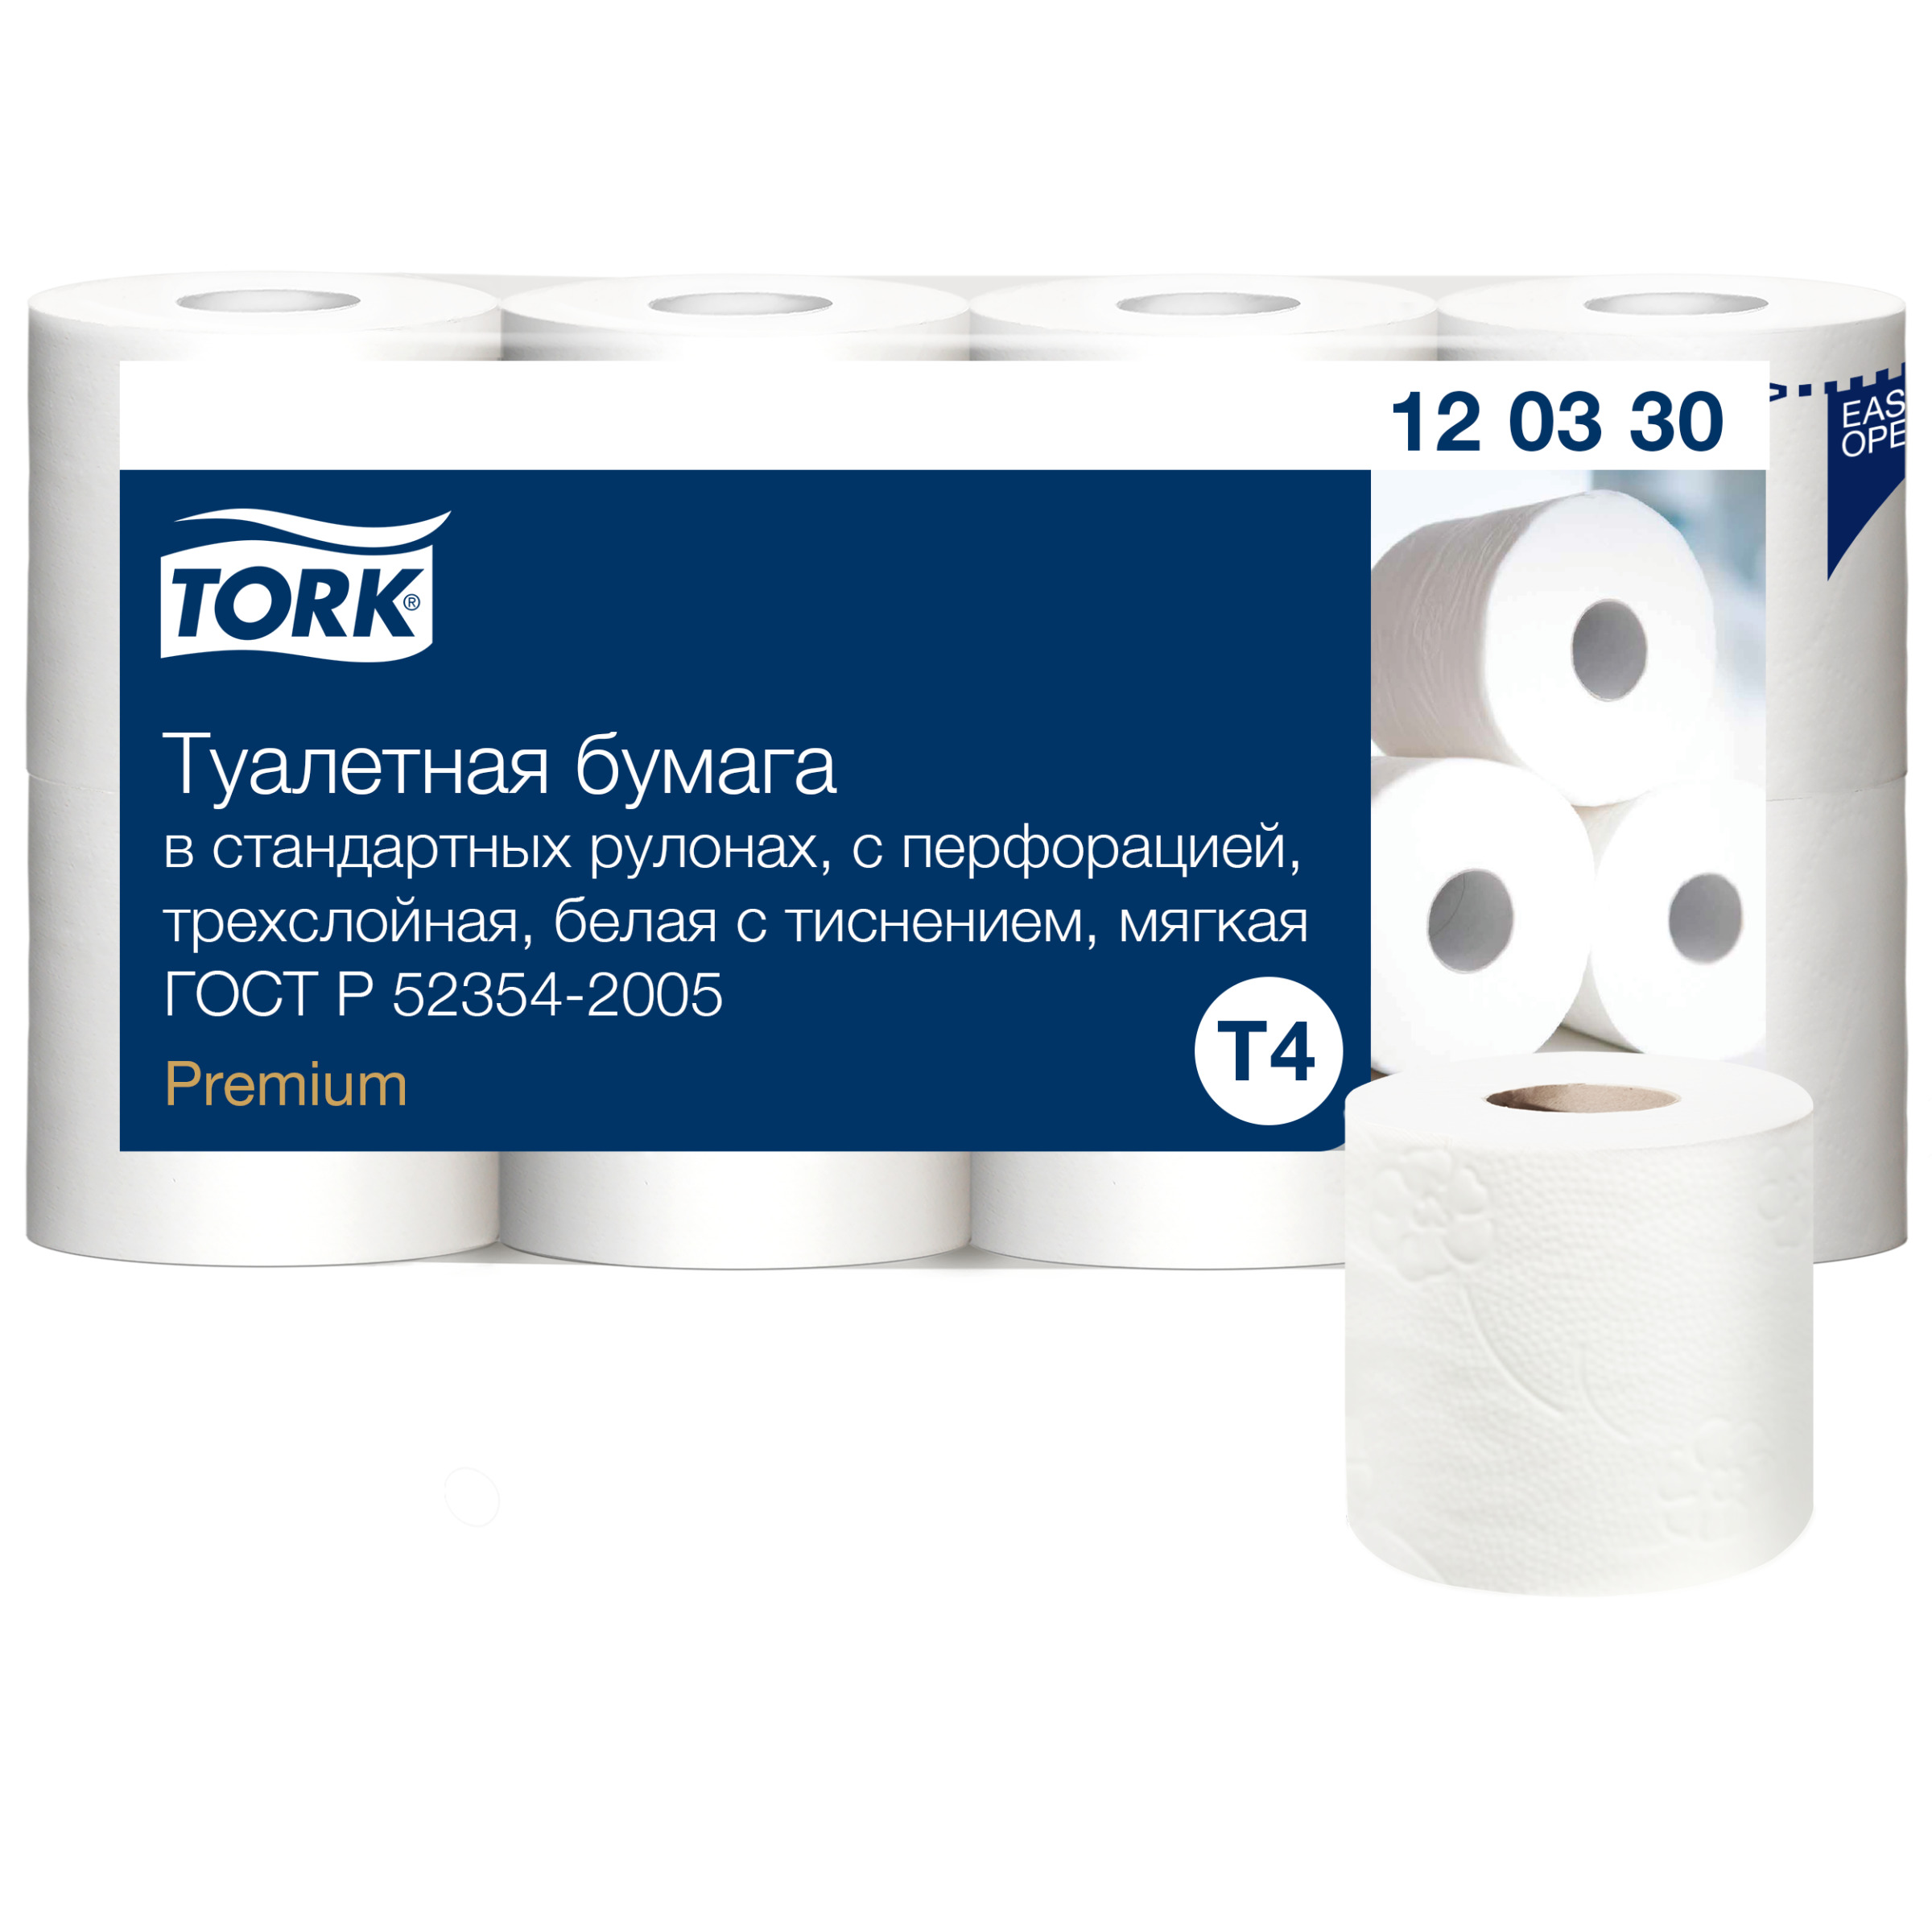 Туалетная бумага Tork в стандартных рулонах, T4, 3 слоя, 8 рул., 12 уп бумага туалетная tork premium в рулонах т6 2слоя 90м 27 рулонов